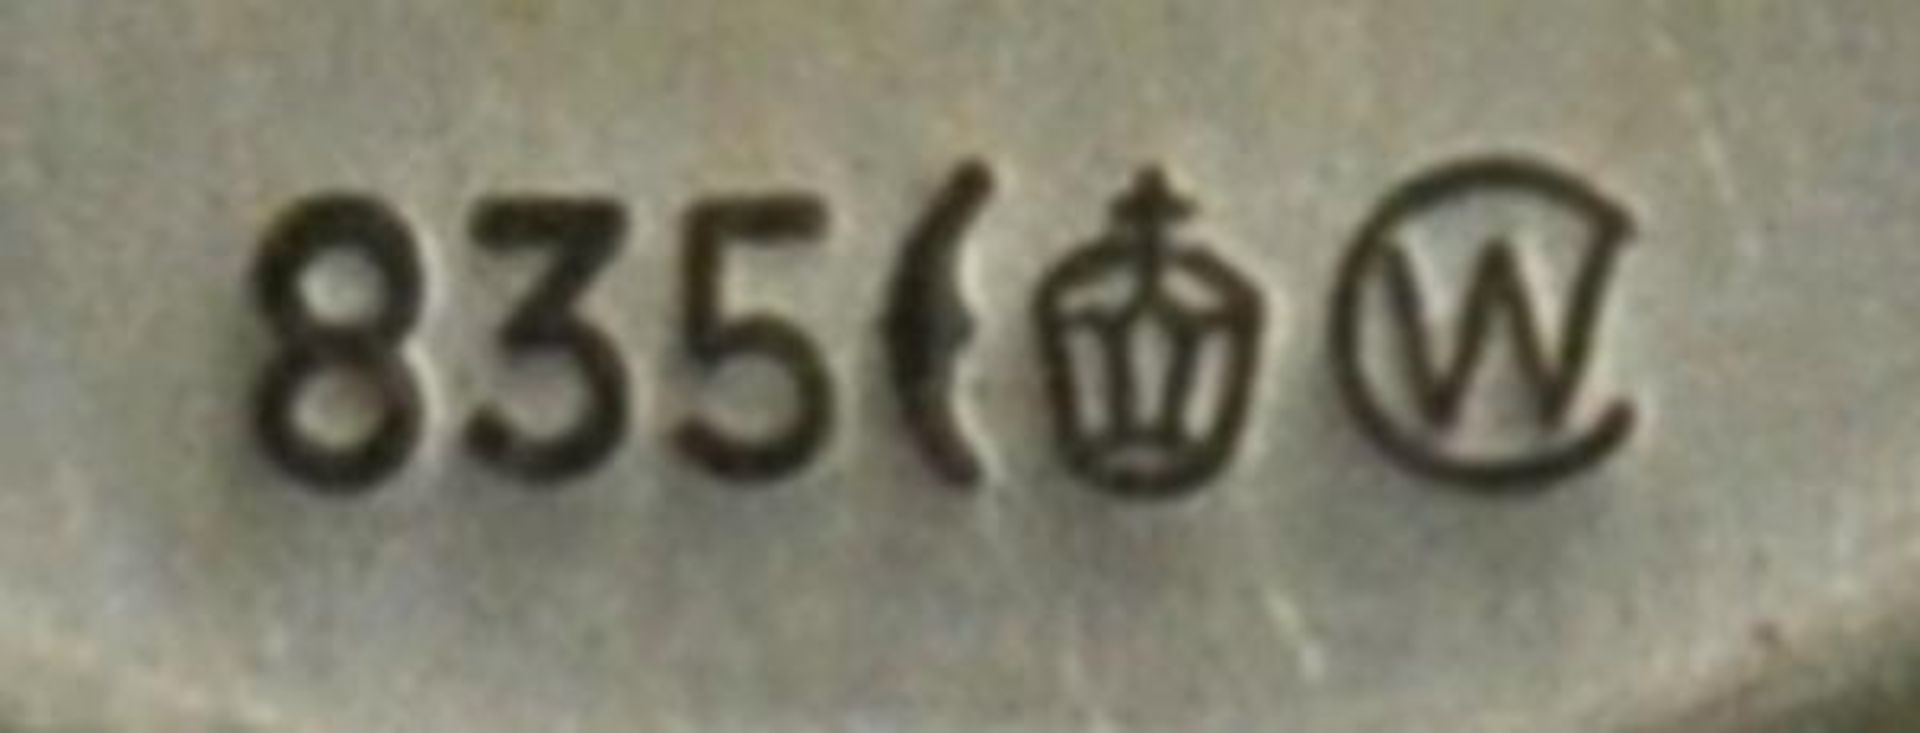 ZIGARRENABSCHNEIDER u. TASCHENMESSER mit kleinem Pinienrelief, 2 Messer u. Feile, Silber, L 7cm( - Bild 3 aus 3